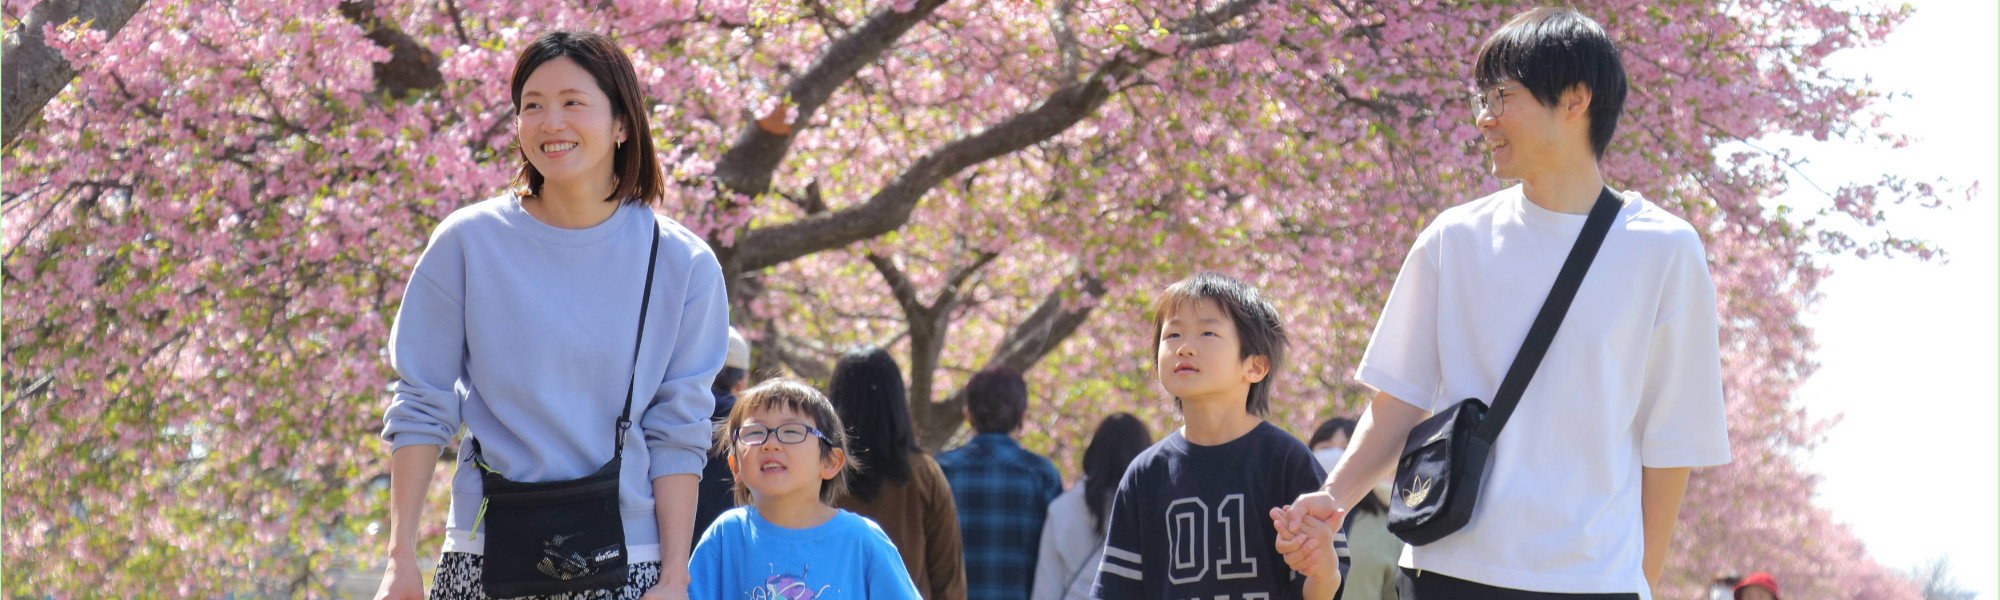 桜並木を歩く家族の写真